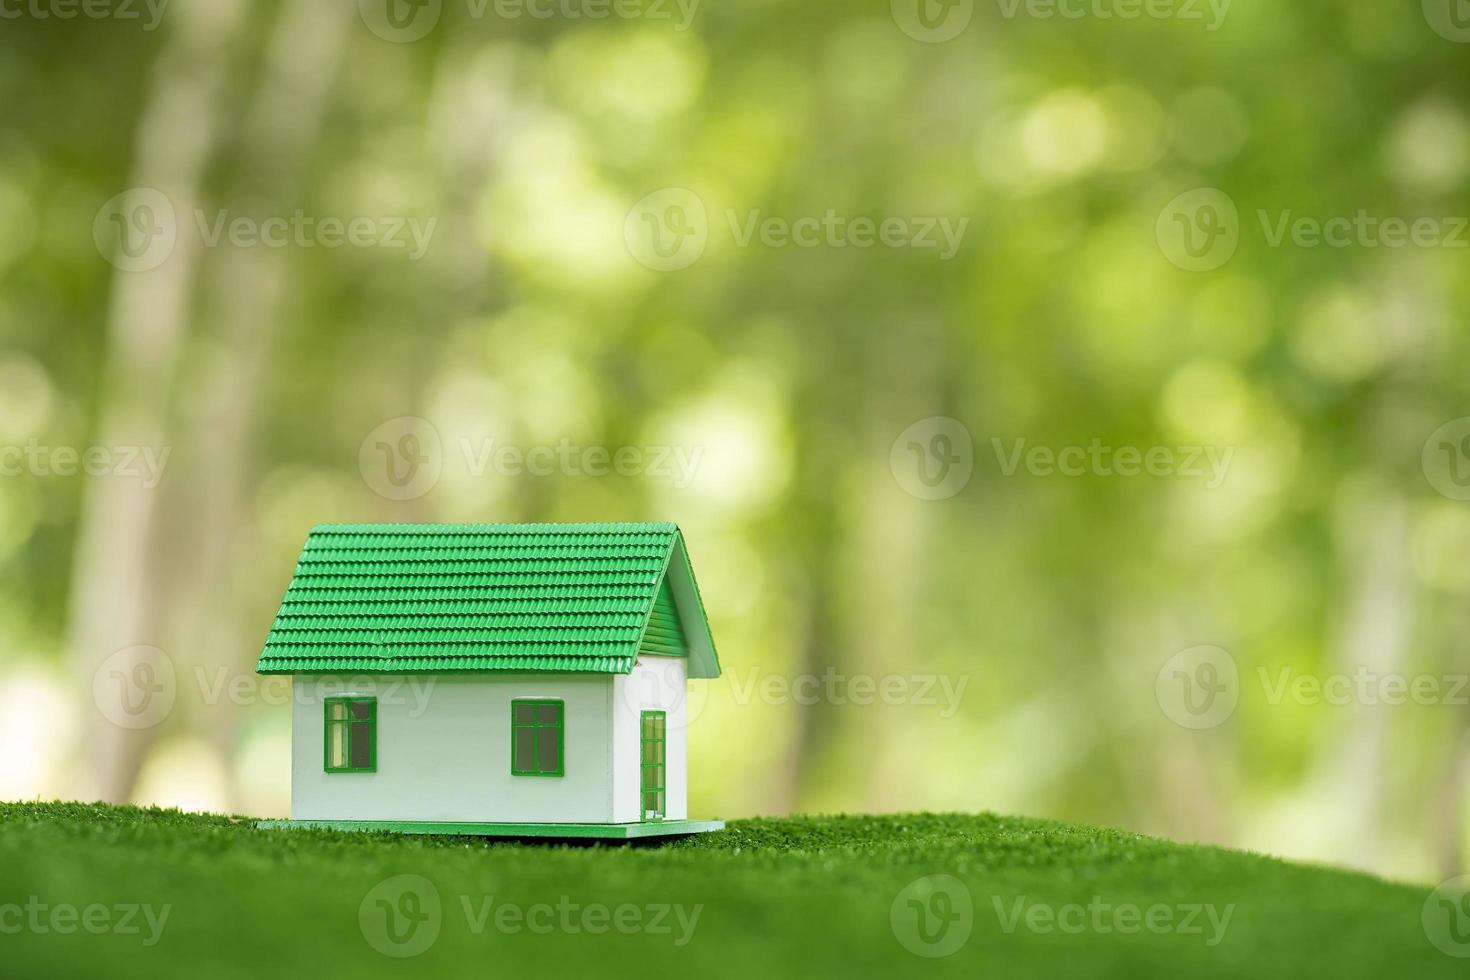 Casa inmobiliaria ecológica ecológica. casa de propiedad de construcción modelo pequeño sobre césped en ecología de naturaleza verde. diseño residencial de conservación de energía sostenible y venta - concepto de negocio de alquiler foto